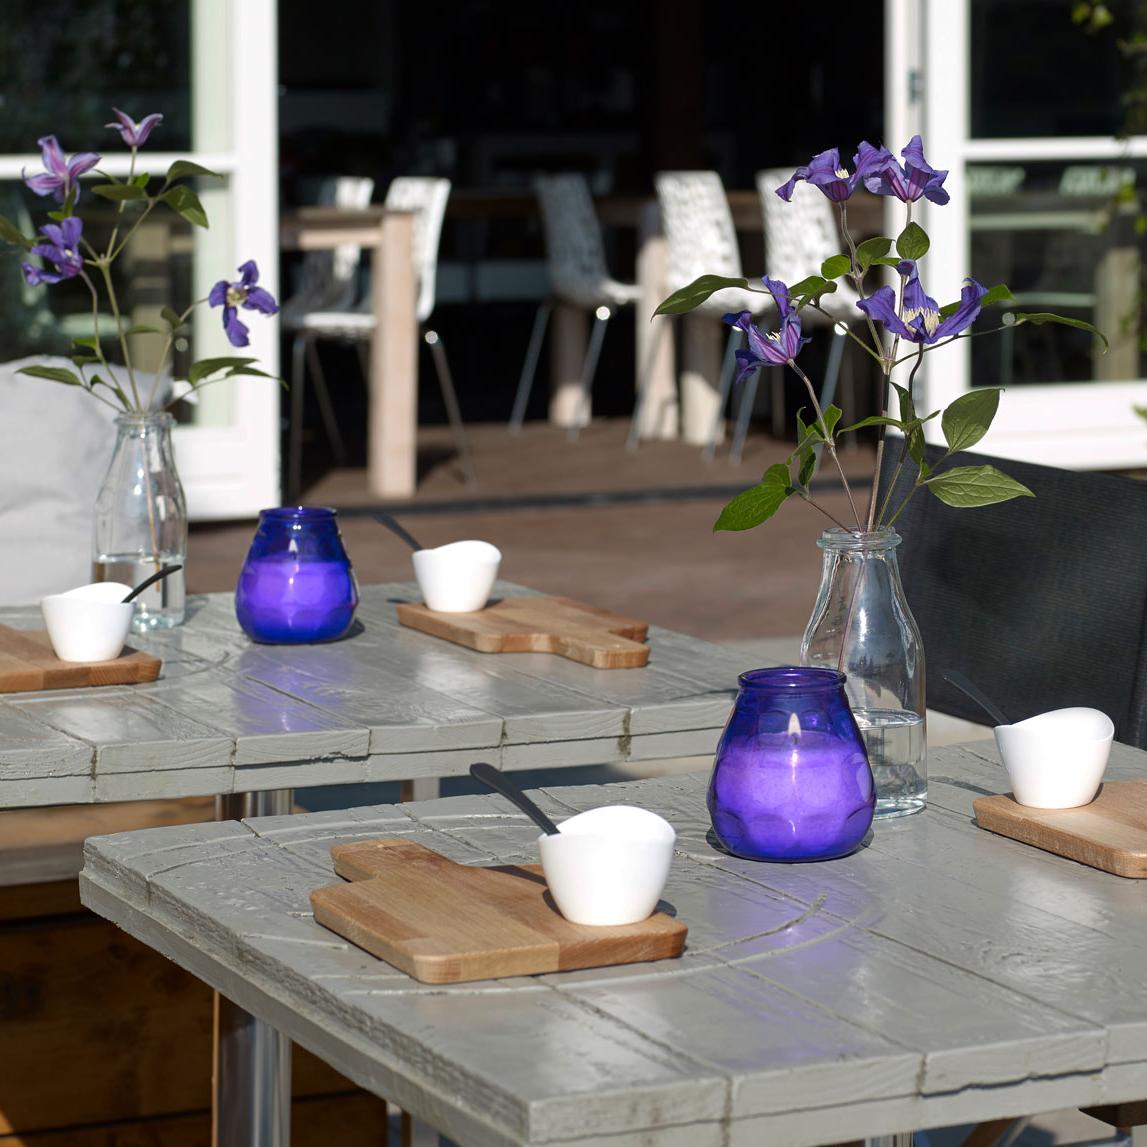 Zwei graue Terrassentische mit Frühstücksbrettchen und violetten Blumen in einer Glasvase. Auf jedem Tisch steht ein violettes, brennendes Windlicht.